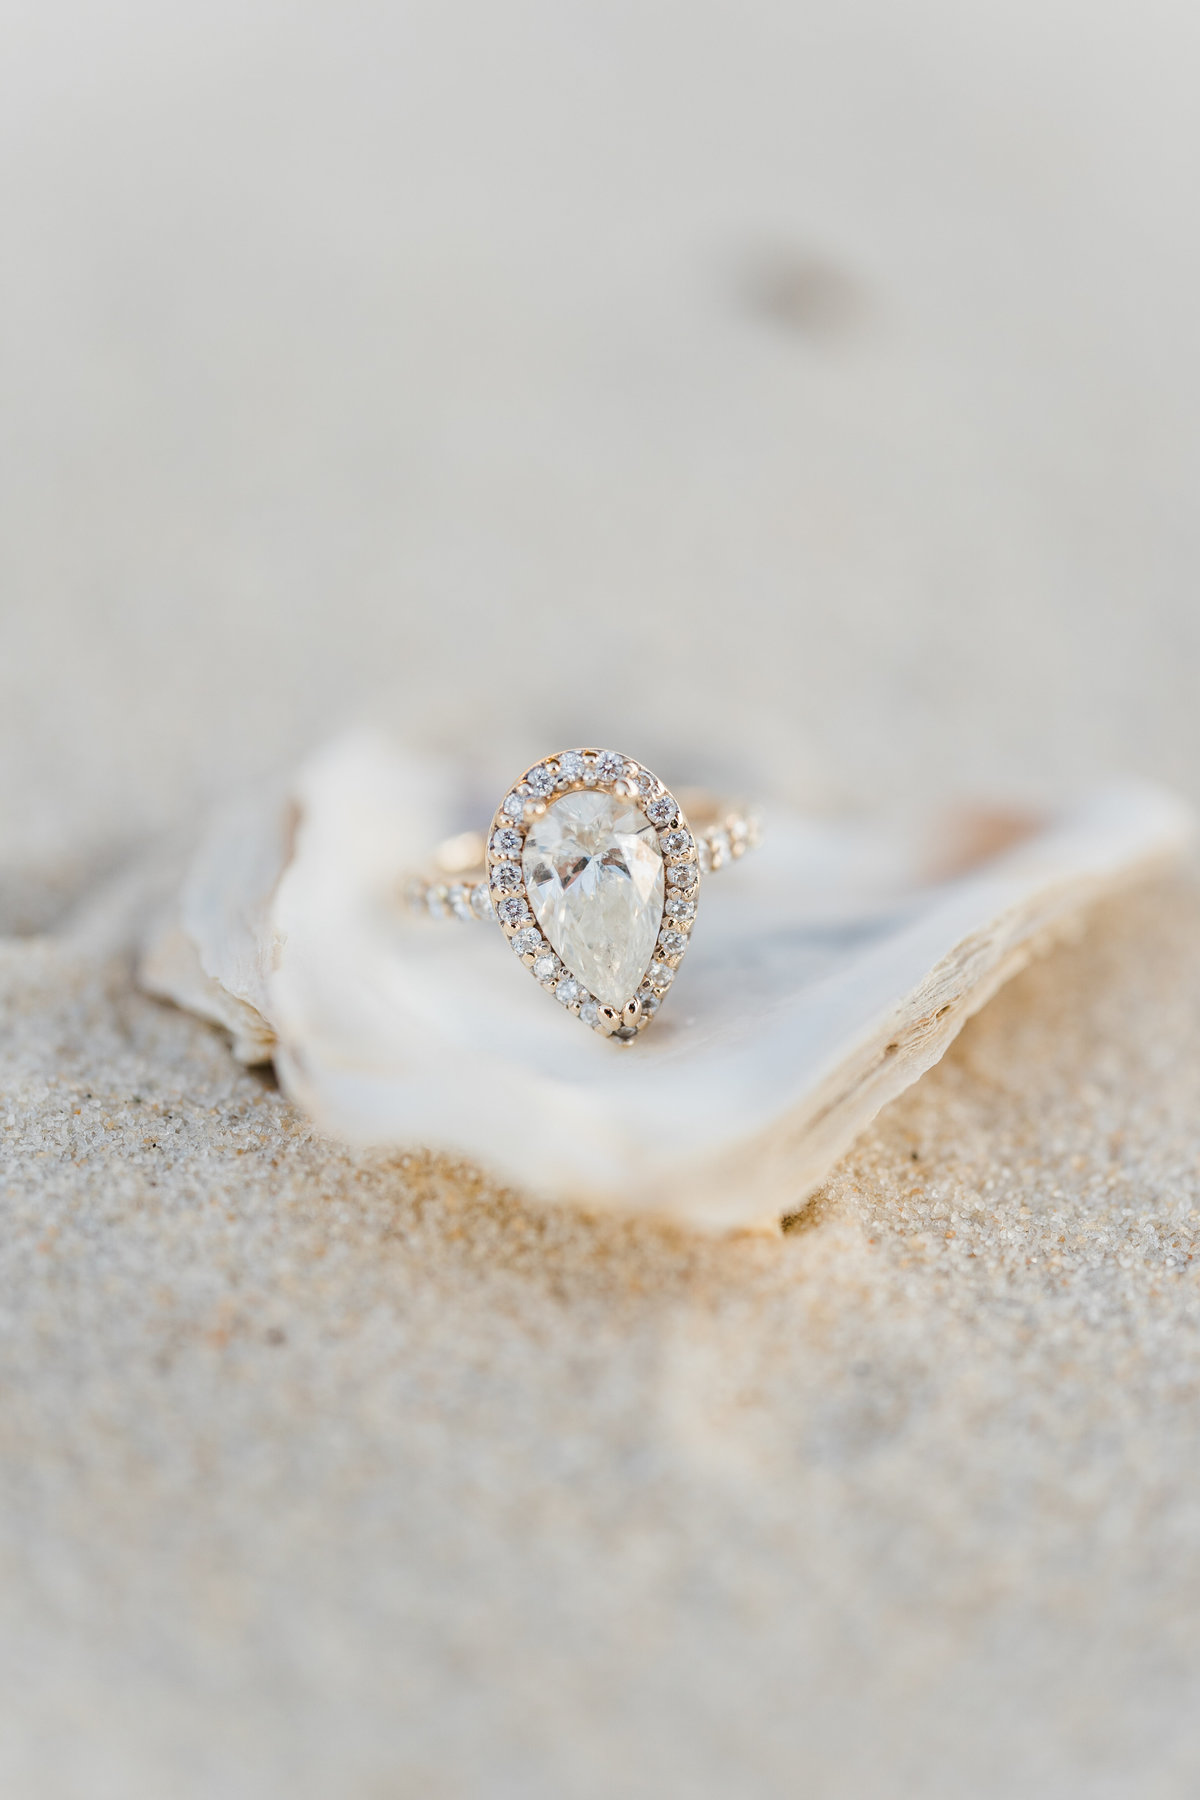 Teardrop diamond ring in a shell